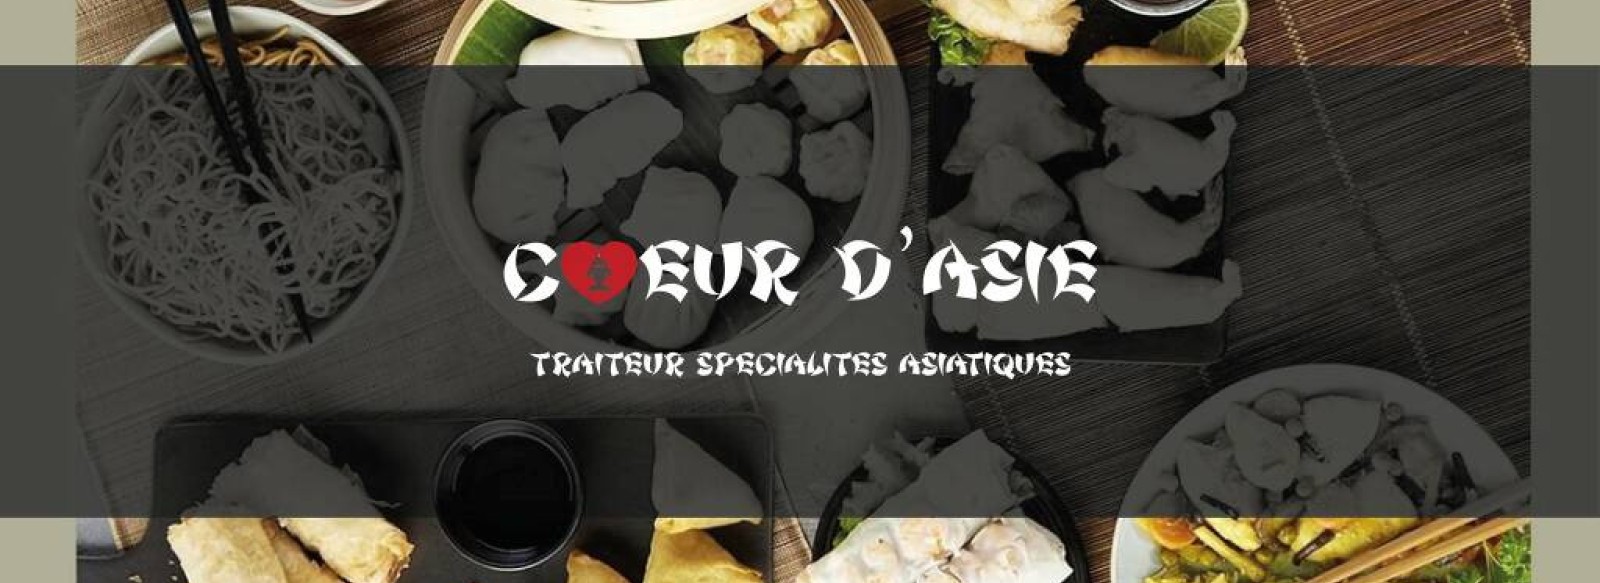 COEUR D'ASIE FOOD-TRUCK